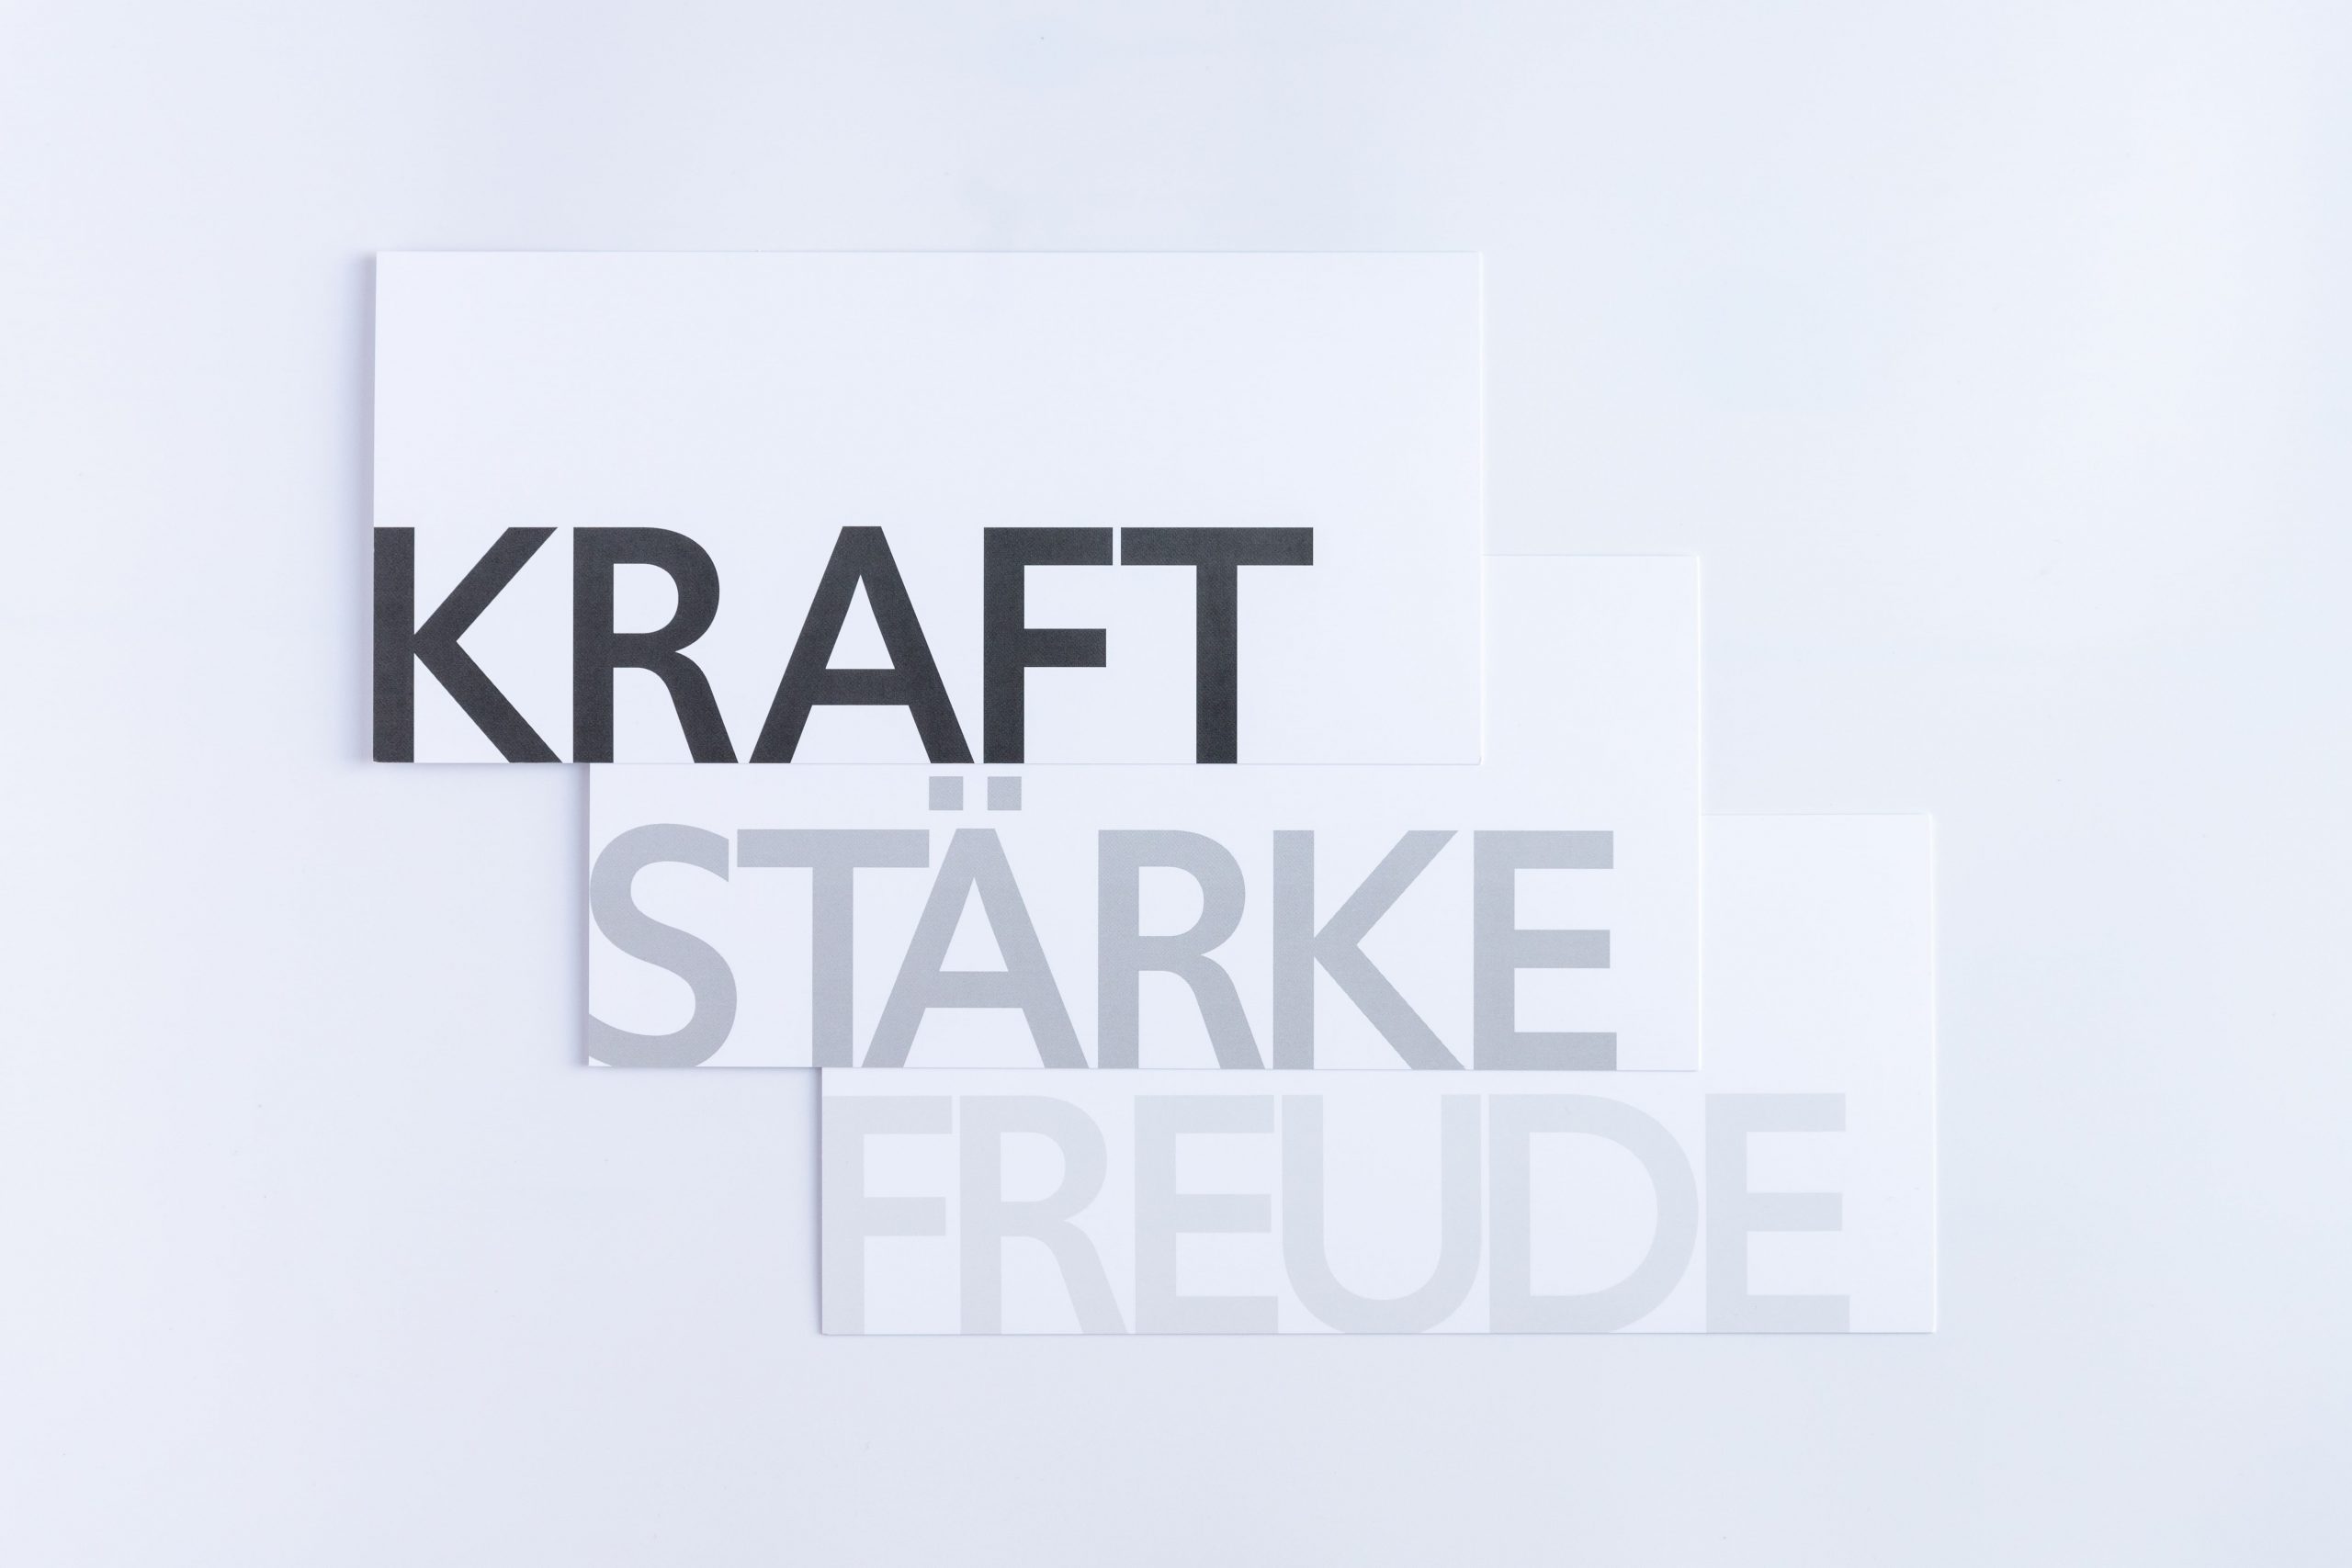 Grußkartenset "SW" bestehend aus den Wörterkarten "FREUDE", "STÄRKE" und "KRAFT"